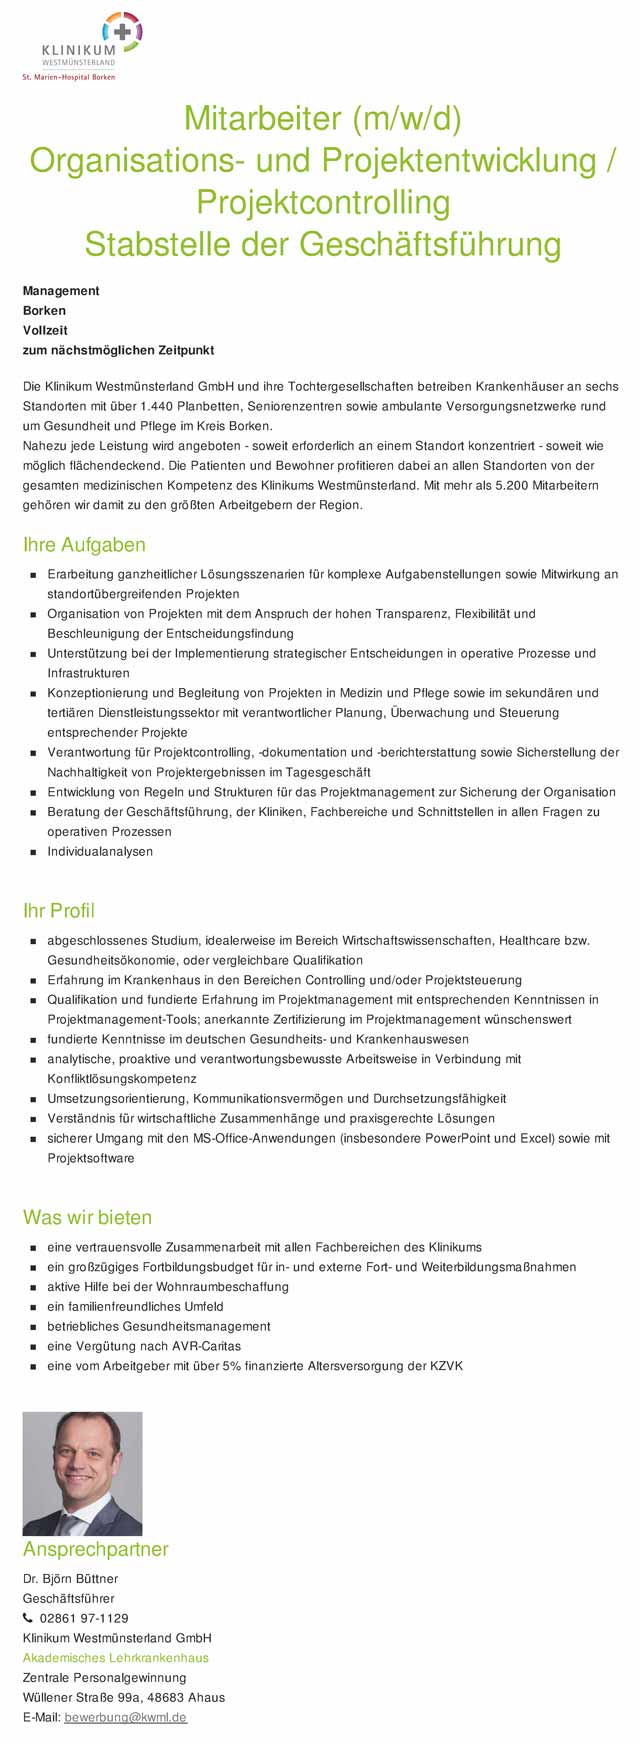 Klinikum Westmünsterland GmbH: Mitarbeiter Organisations- und Projektentwicklung / Projektcontrolling (m/w/d)